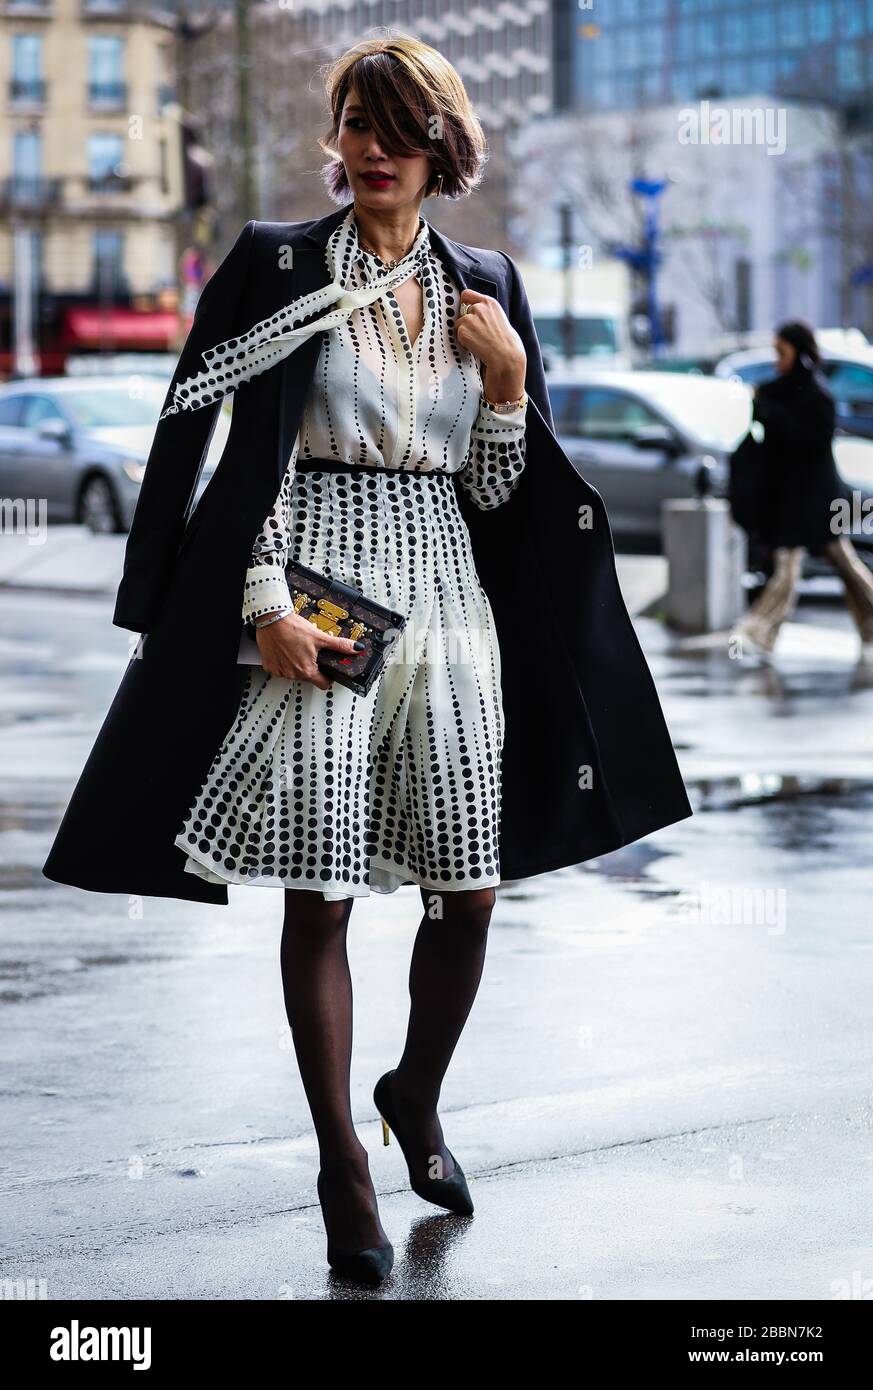 PARÍS, Francia - 4 de marzo de 2019: Mujeres en la calle durante la Semana Moda de París Fotografía stock - Alamy